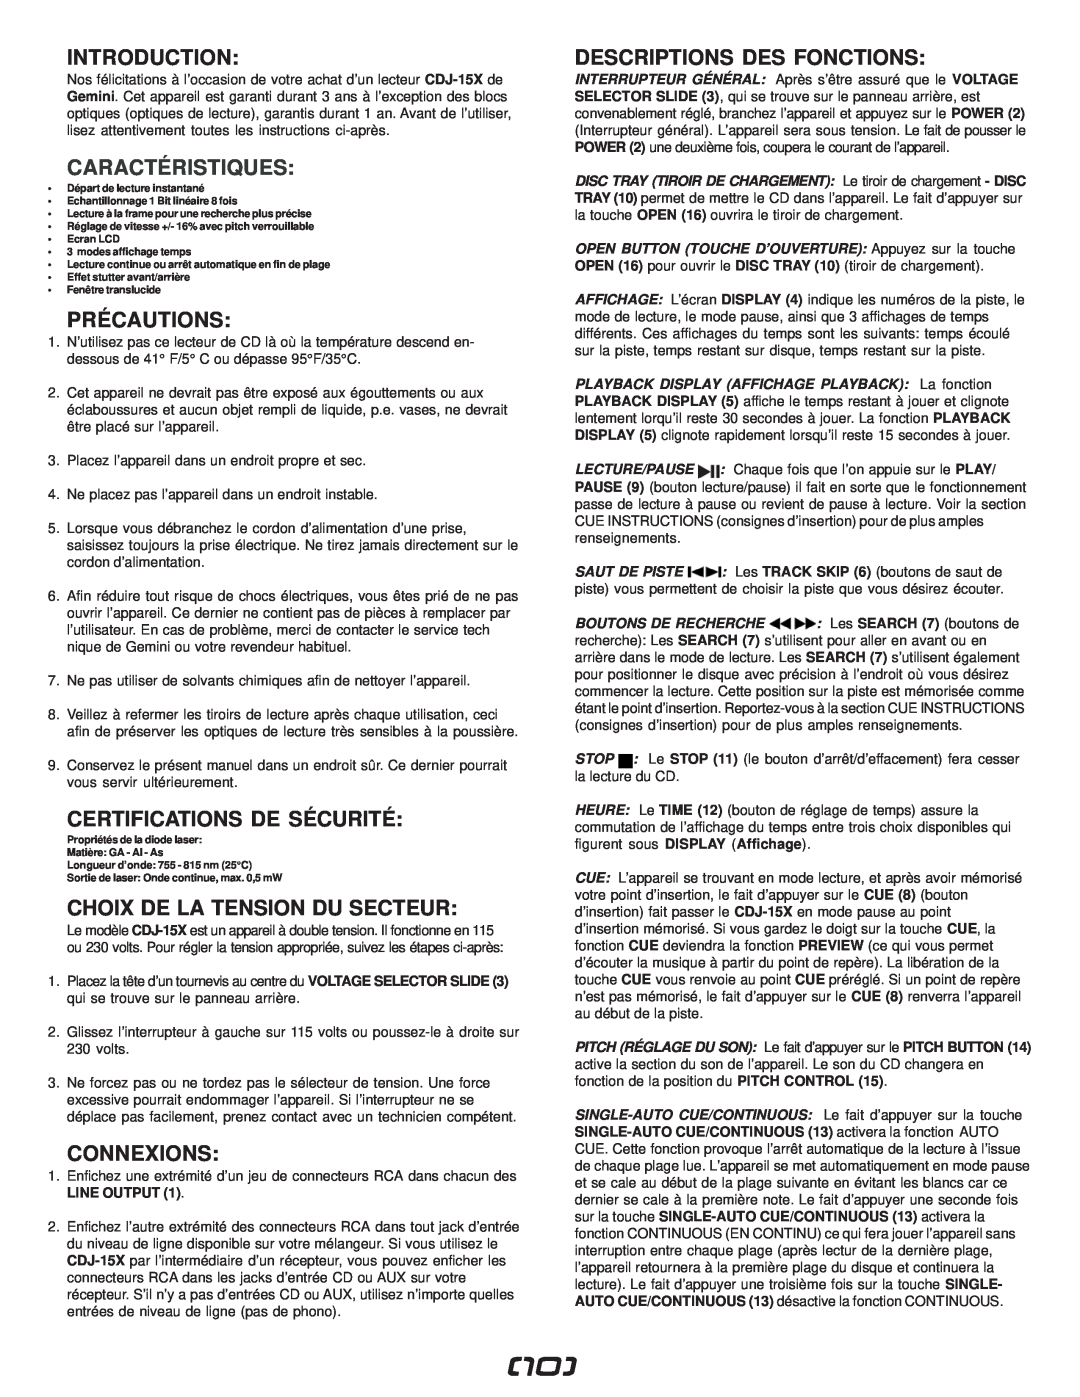 Gemini CDJ-15X manual Caractéristiques, Précautions, Certifications De Sécurité, Choix De La Tension Du Secteur, Connexions 